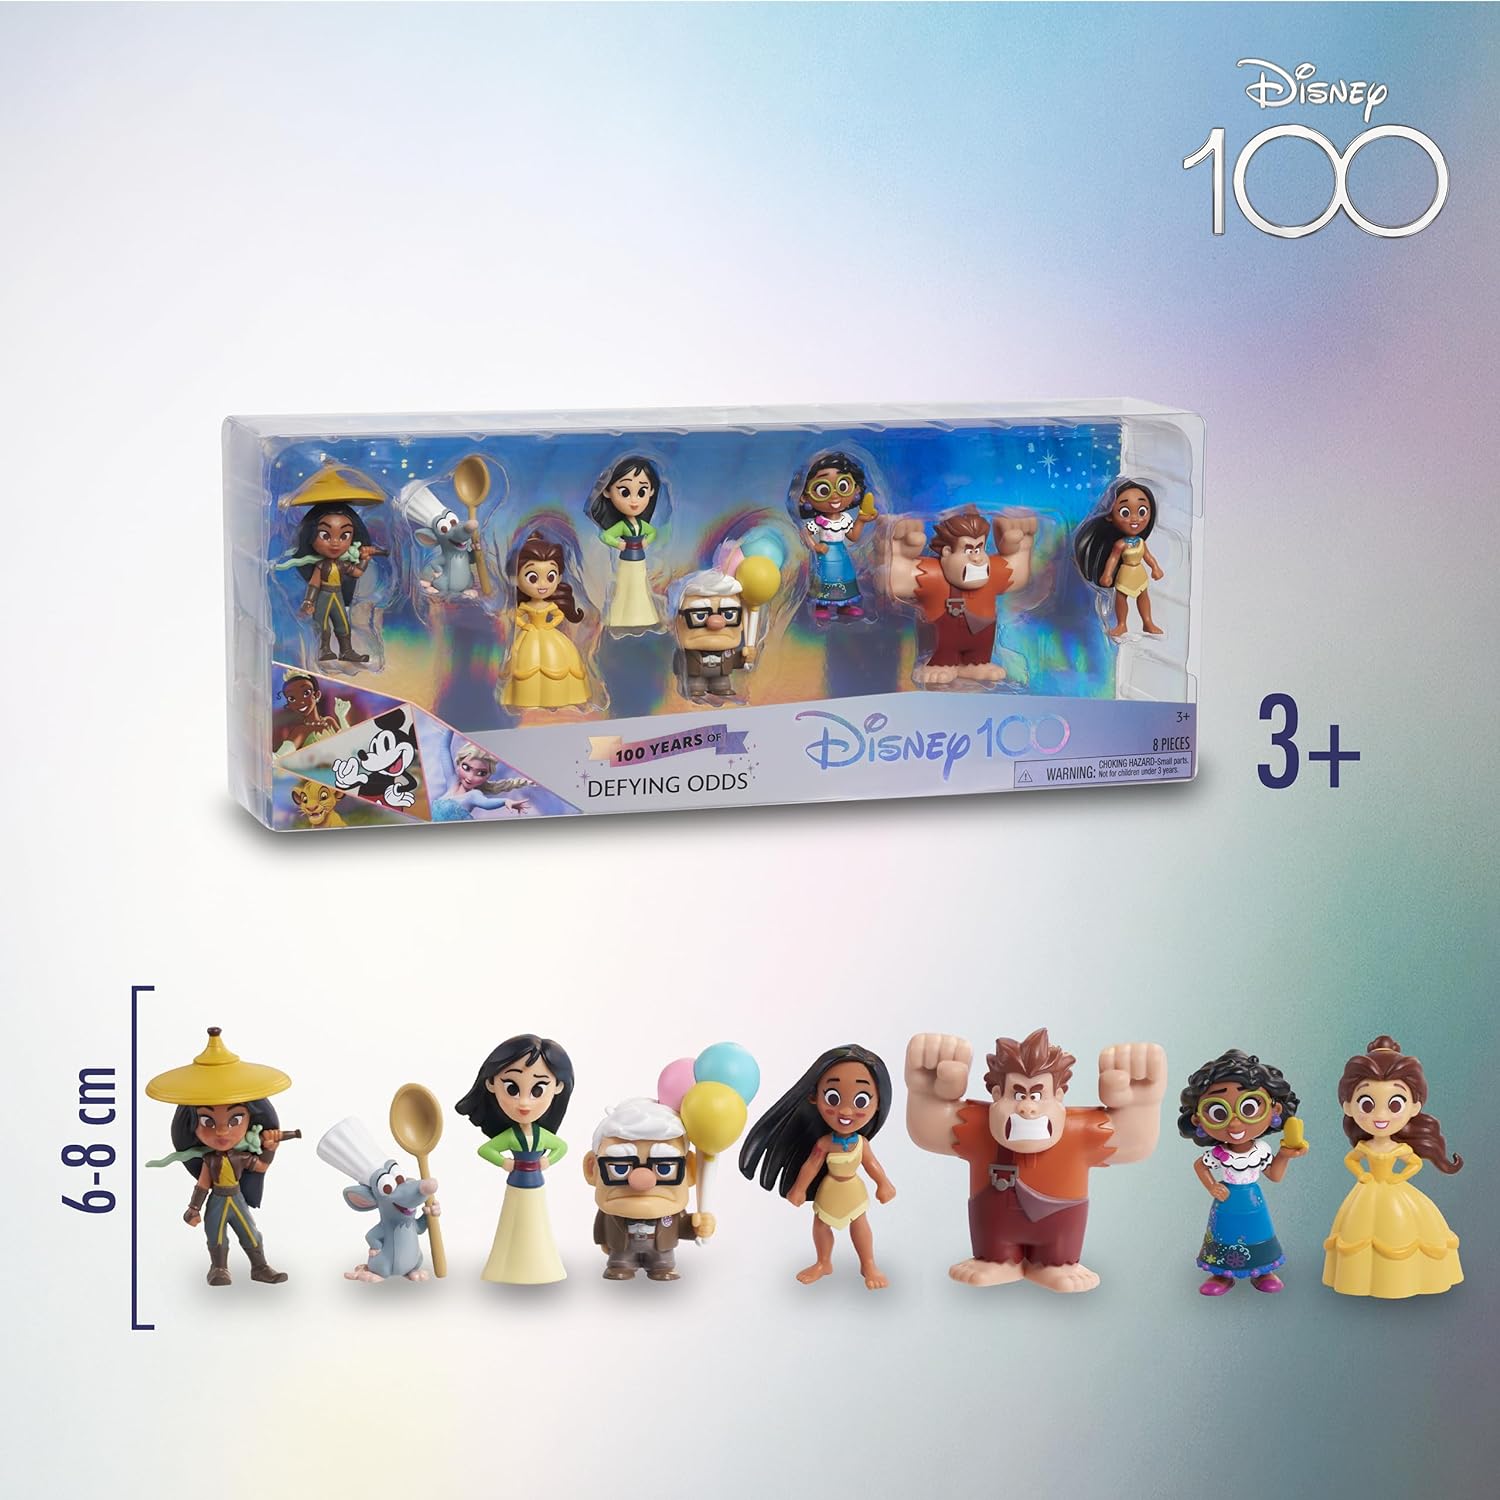 Disney 100 - Pack Defying Odds, giocattolo da collezione con personaggi  Disney, include 8 figure diverse, licenza ufficiale al 1